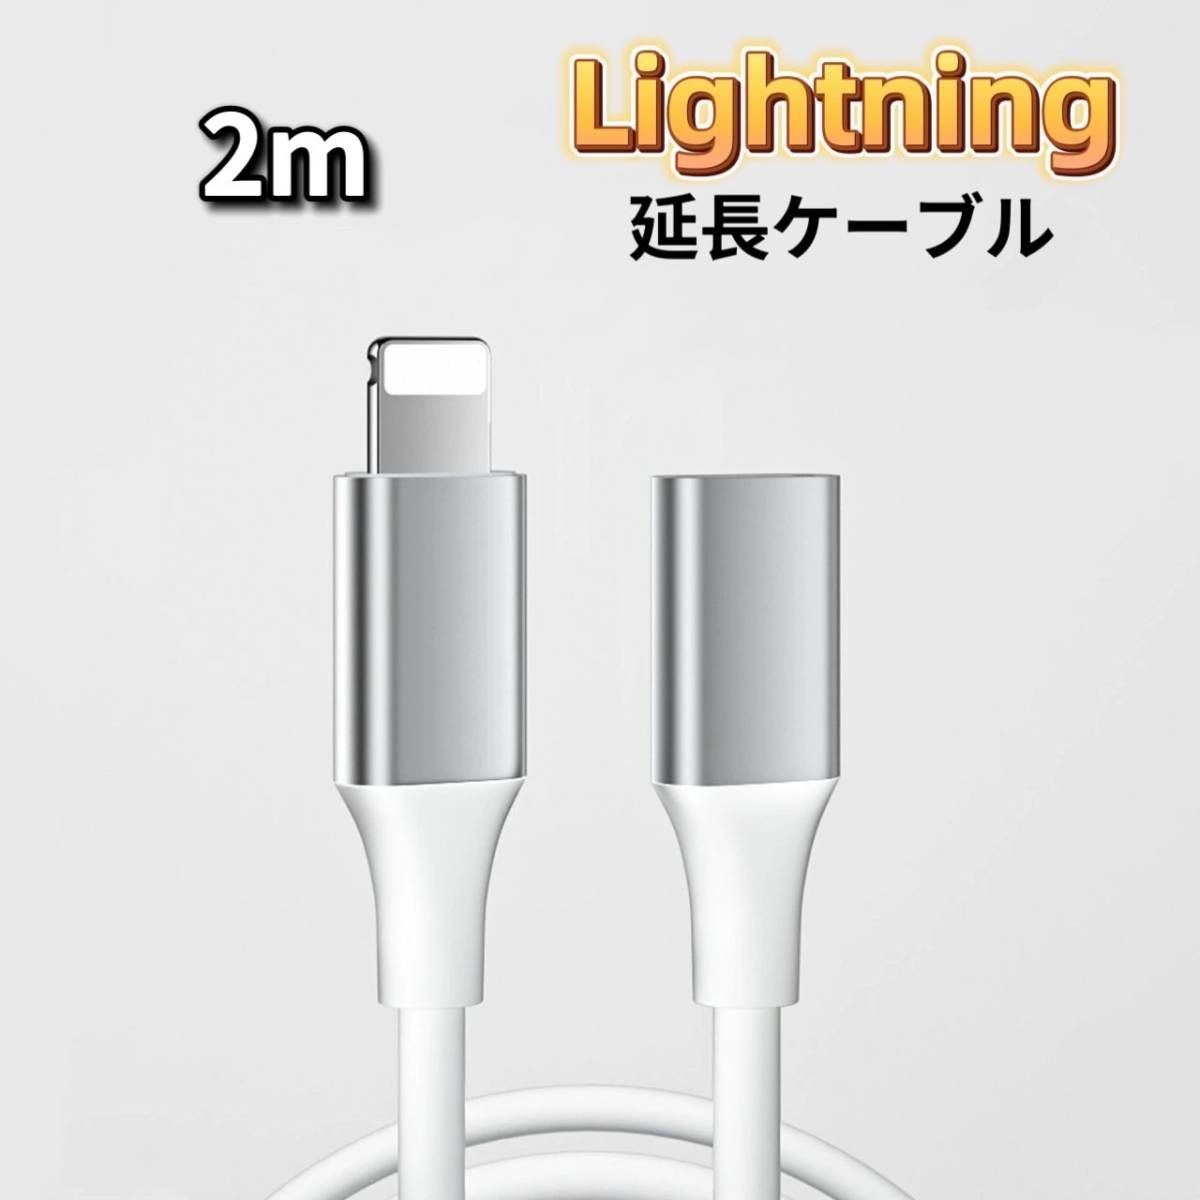 ライトニング 延長ケーブル 2m Lightning 延長コード iPhone 延長ケーブル iPad 延長ケーブル iPhone_画像1